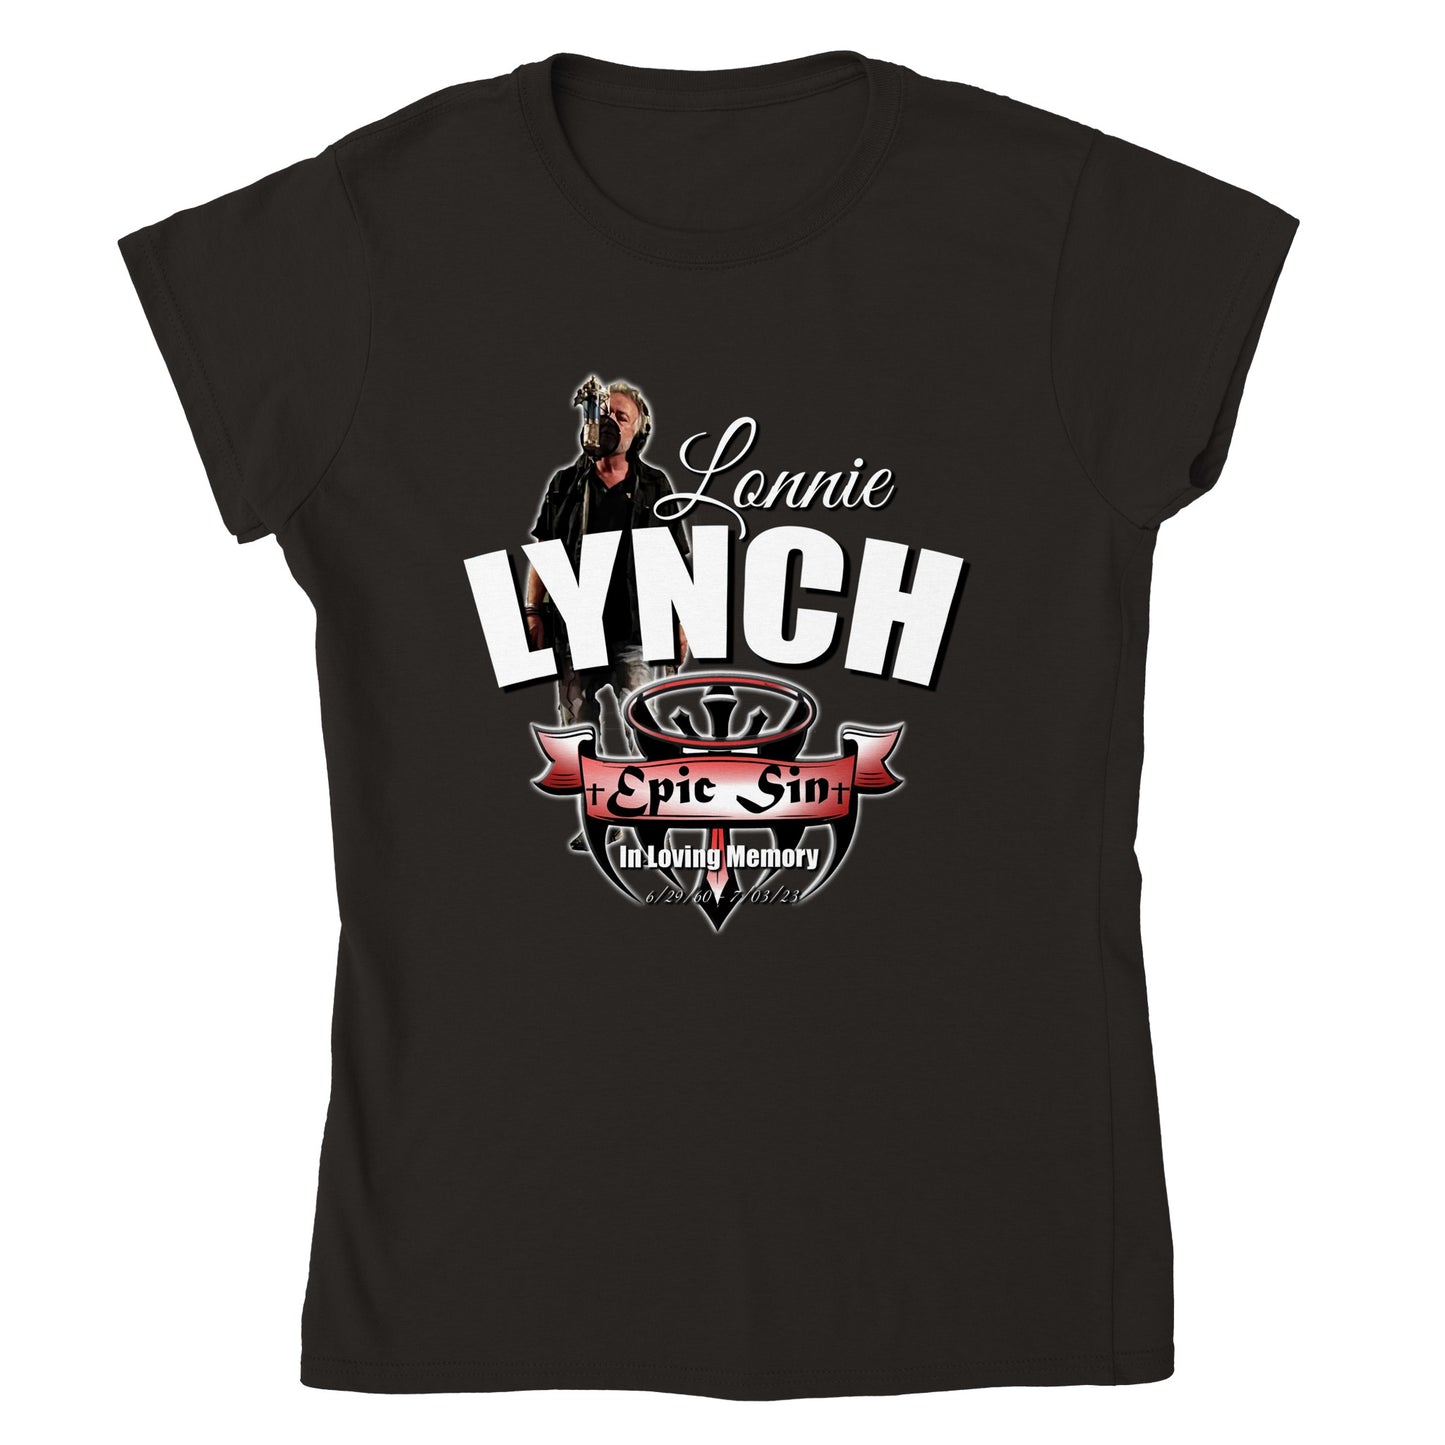 Lonnie Lynich (Epic Sin) Classic Womens Crewneck T-shirt